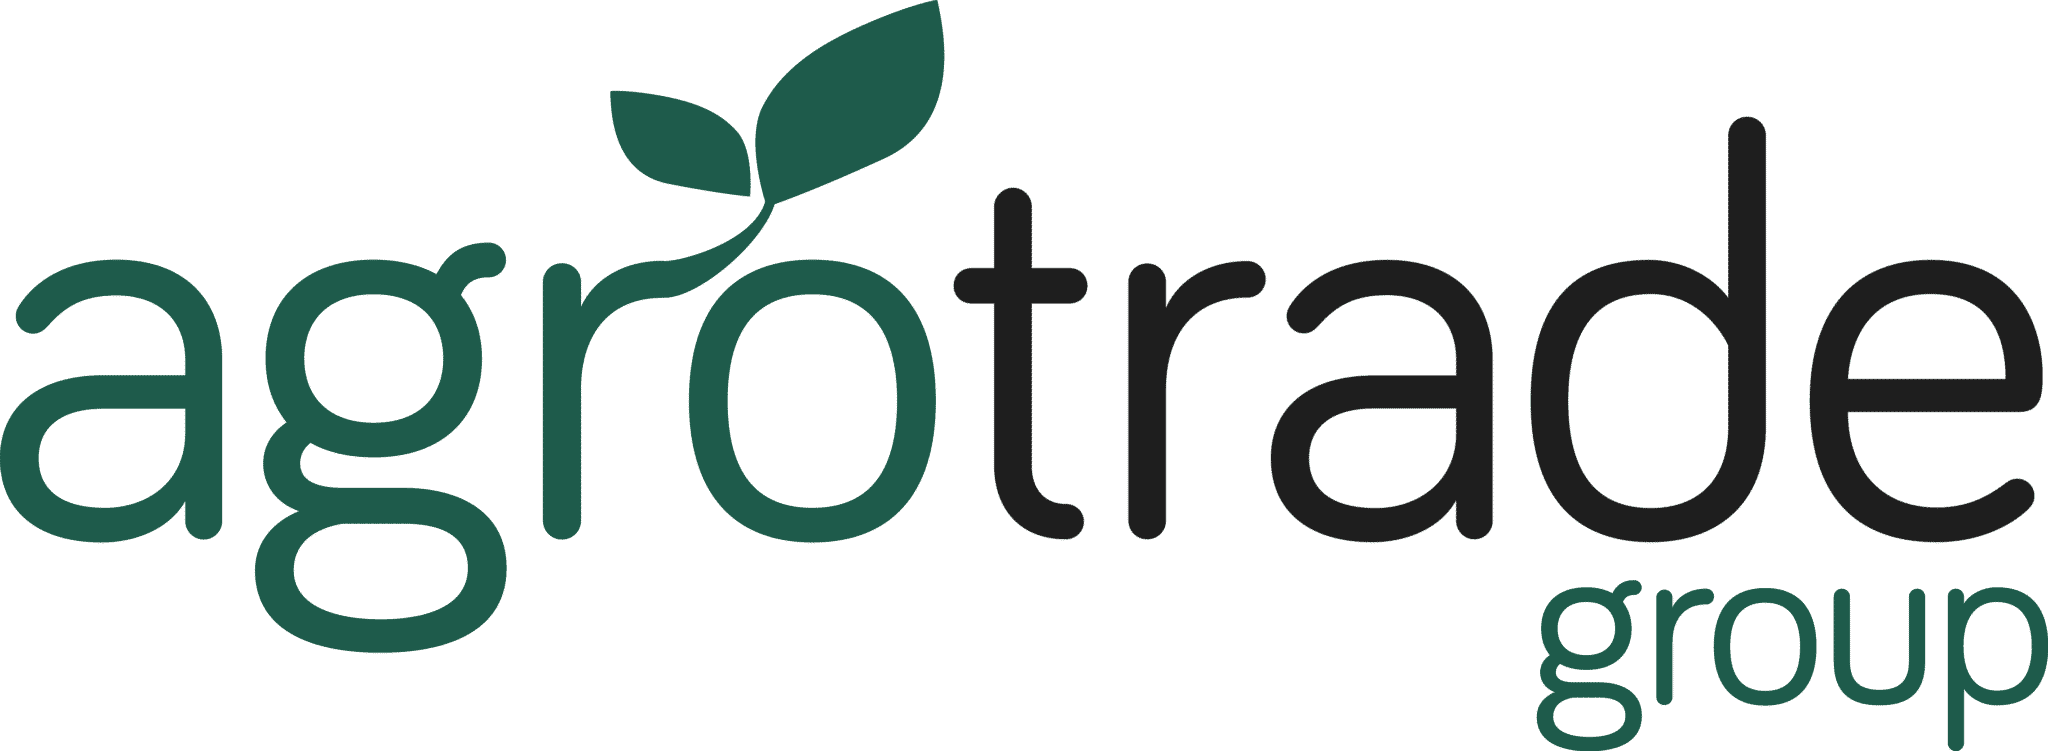 Agrotrade group logo ny groen_1